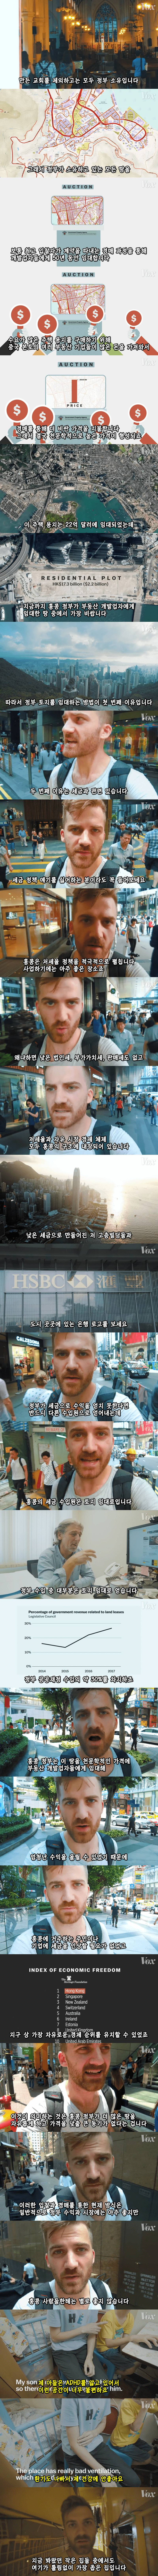 세계에서 가장 지옥같은 부동산을 형성한 도시 홍콩의 새장 속.jpg | 인스티즈